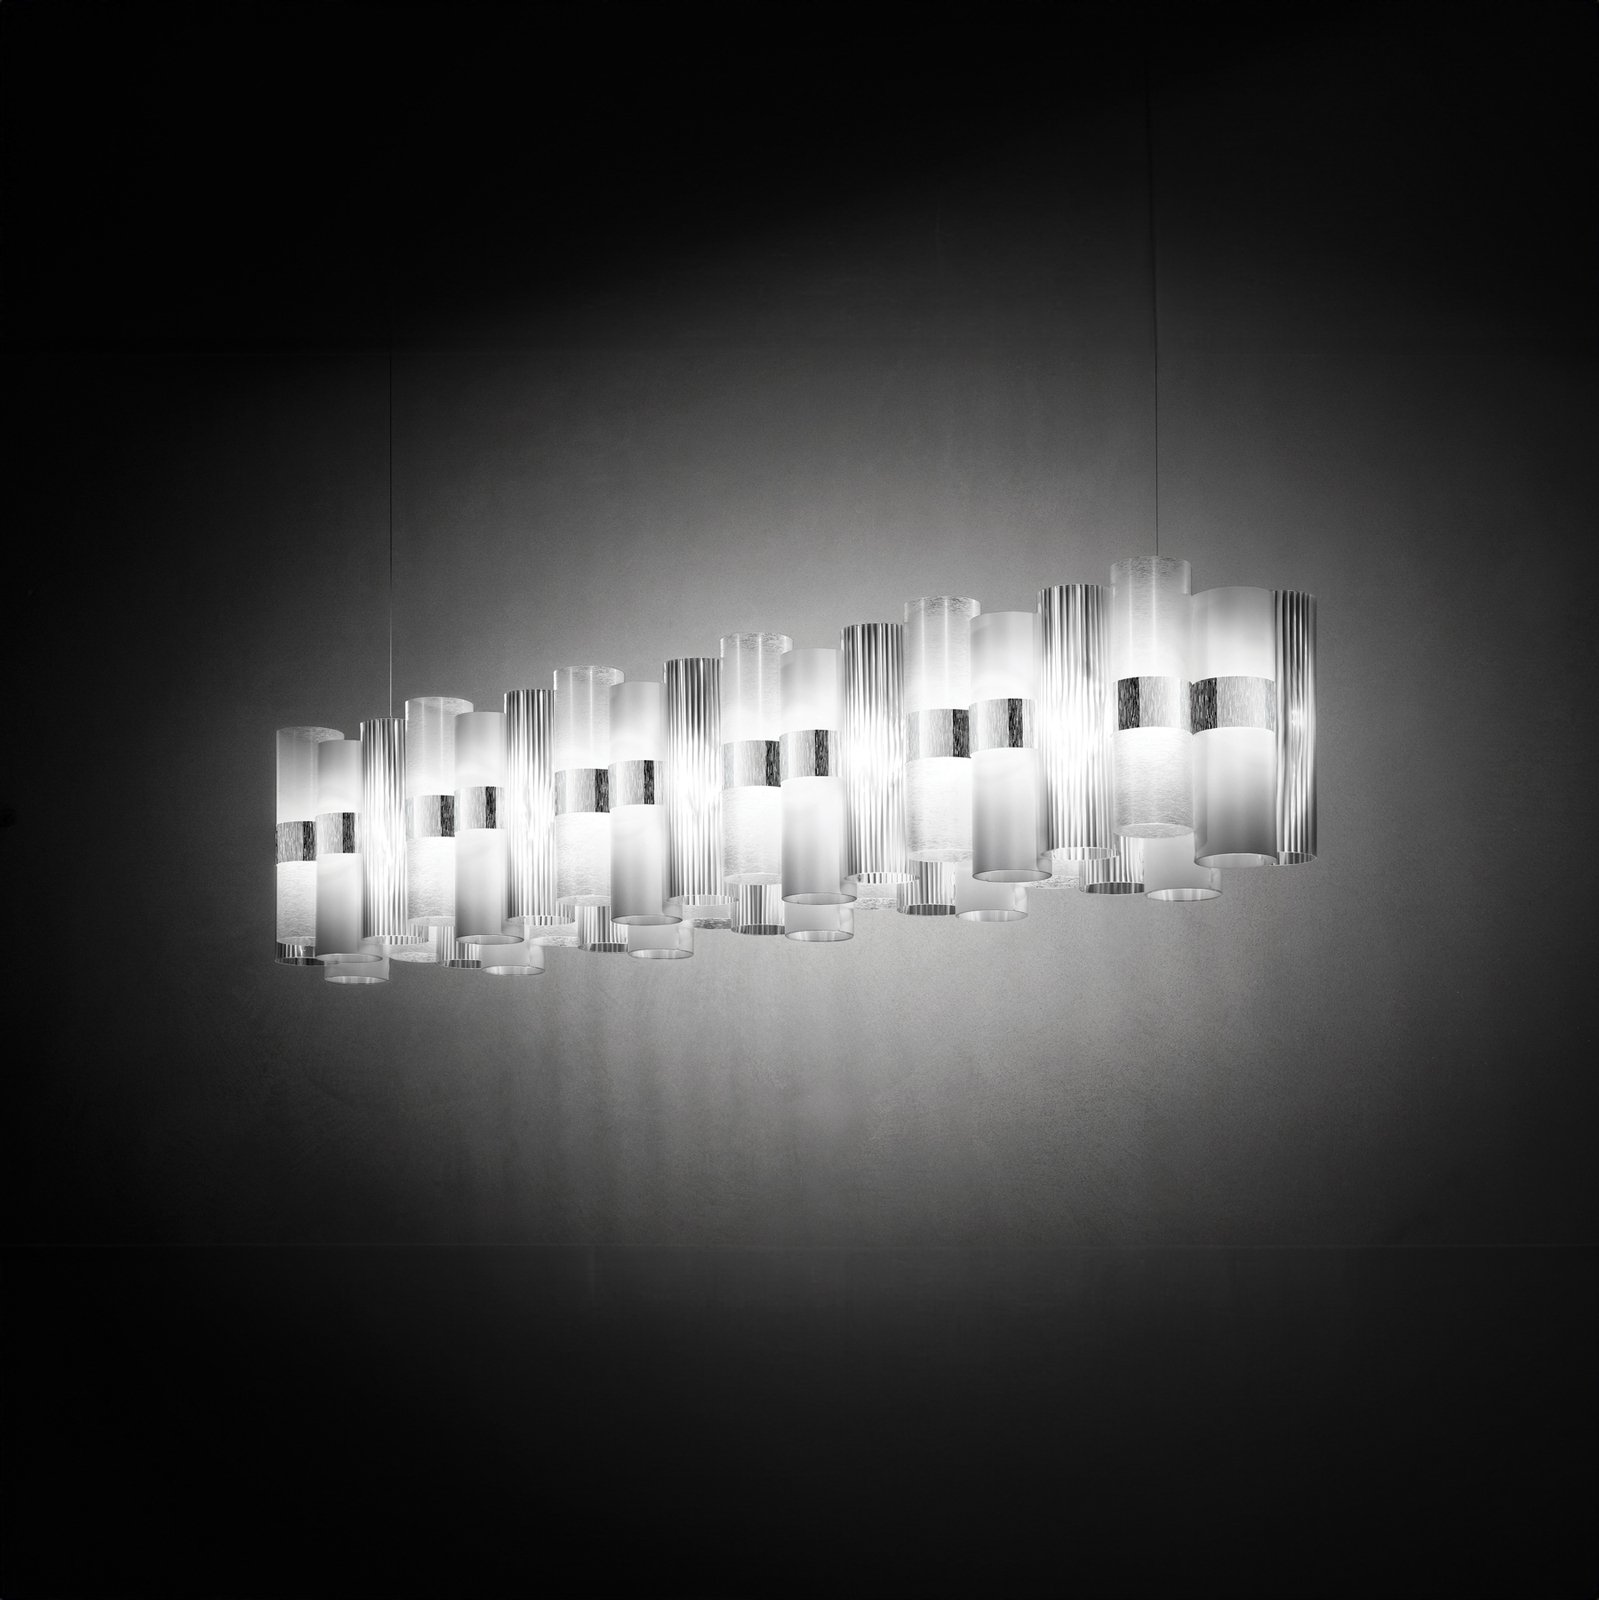 Slamp LED hanging light La Lollo, white, 140 cm